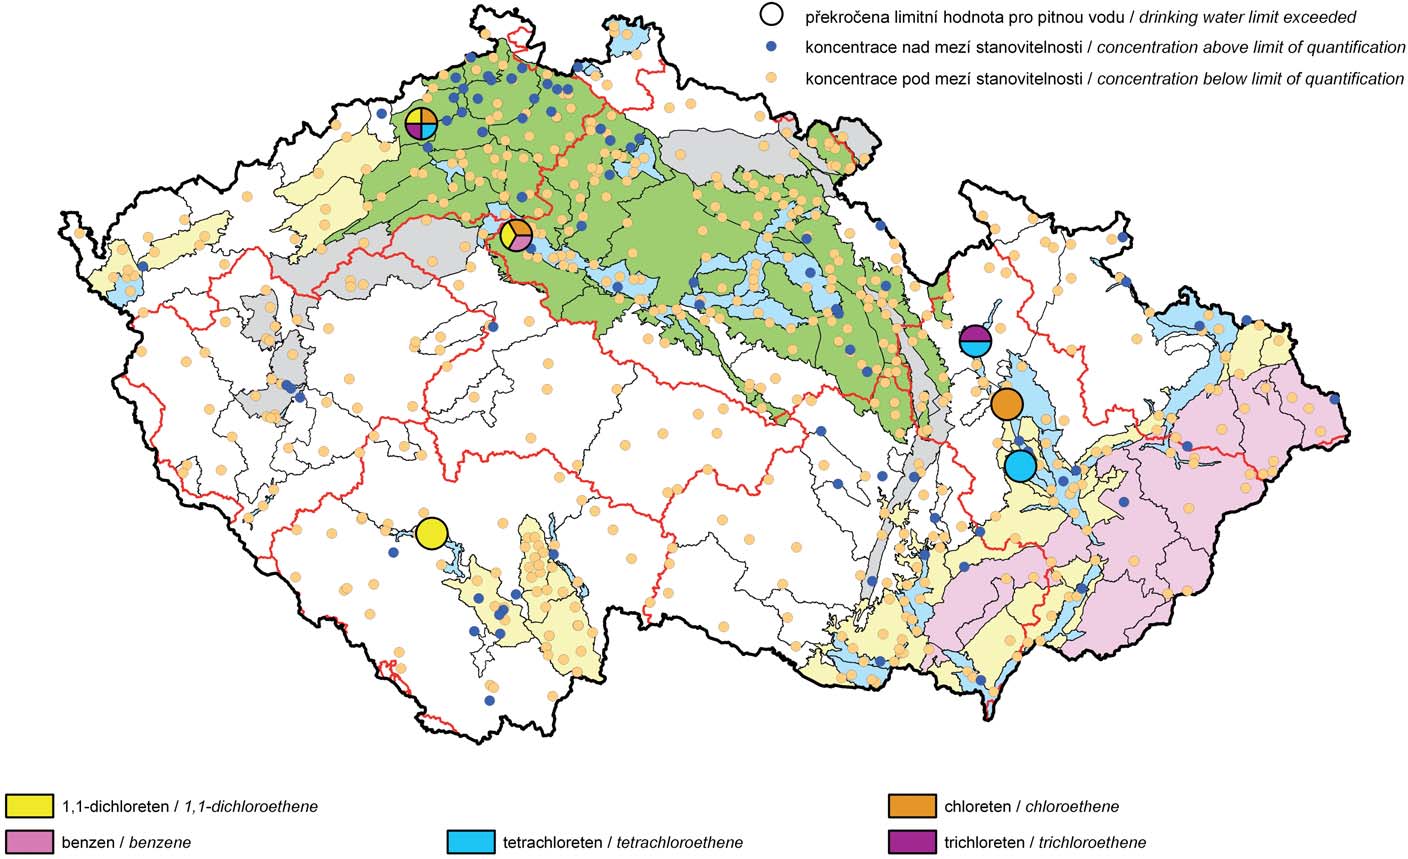 Mapa III.2 Výskyt zvýšených koncentrací těkavých organických látek v podzemních vodách v roce 21. Map III.